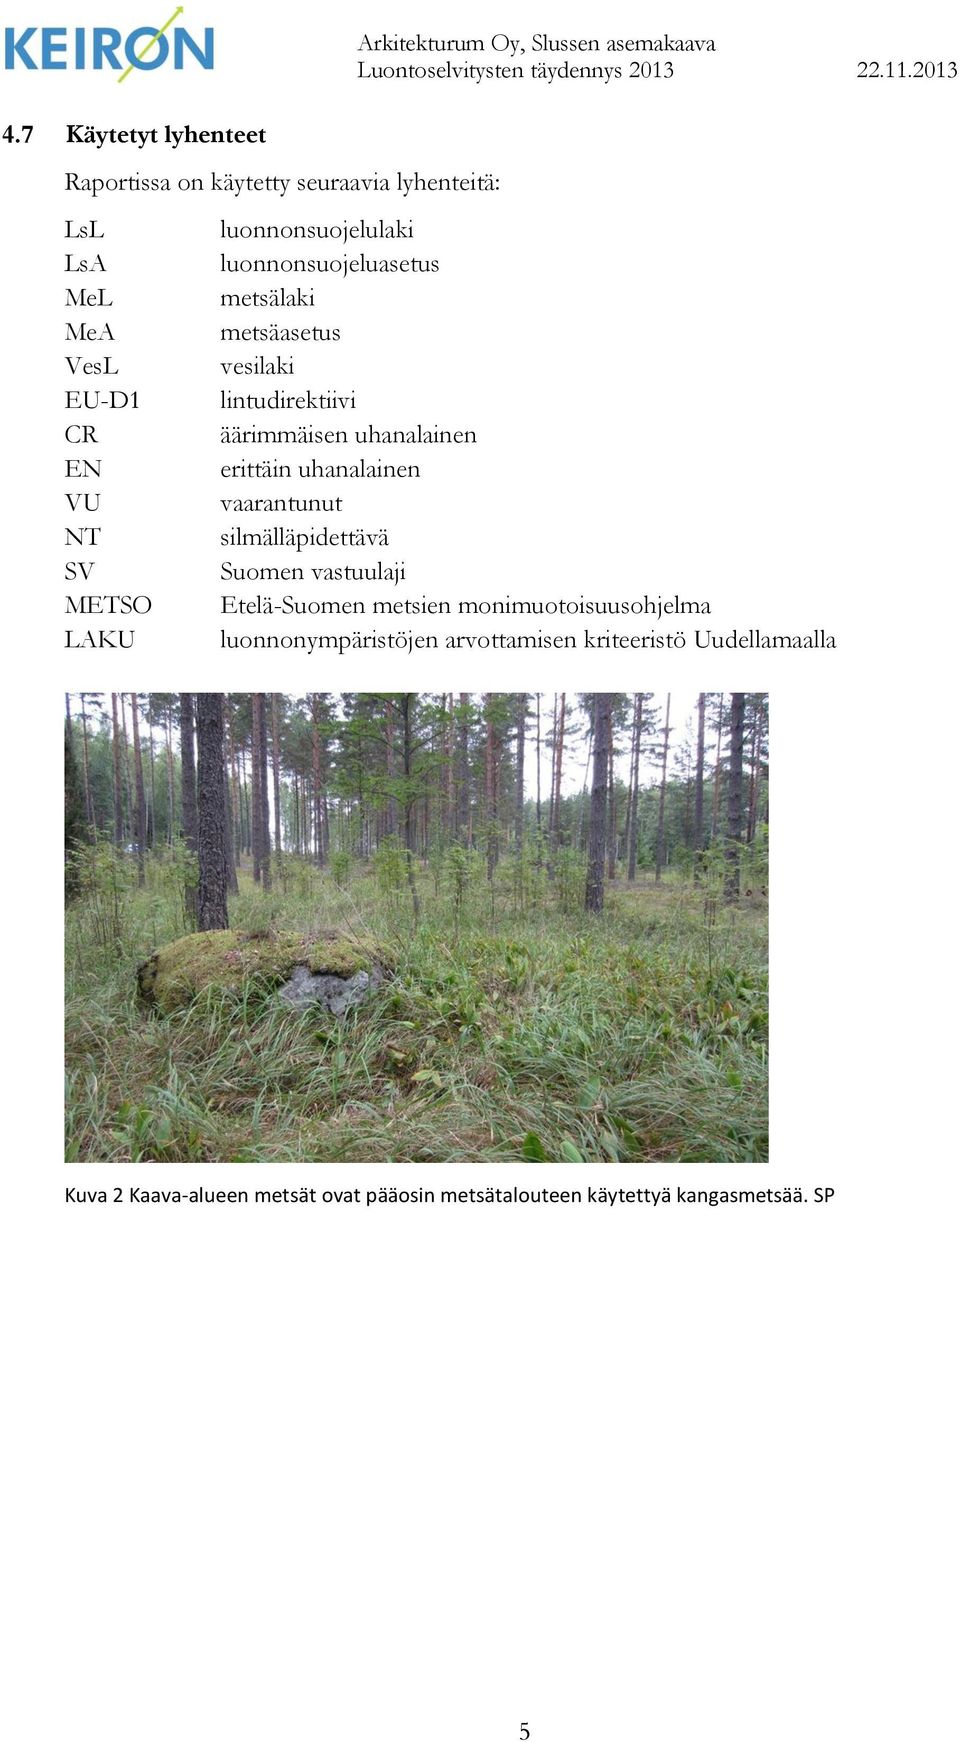 äärimmäisen uhanalainen erittäin uhanalainen vaarantunut silmälläpidettävä Suomen vastuulaji Etelä-Suomen metsien